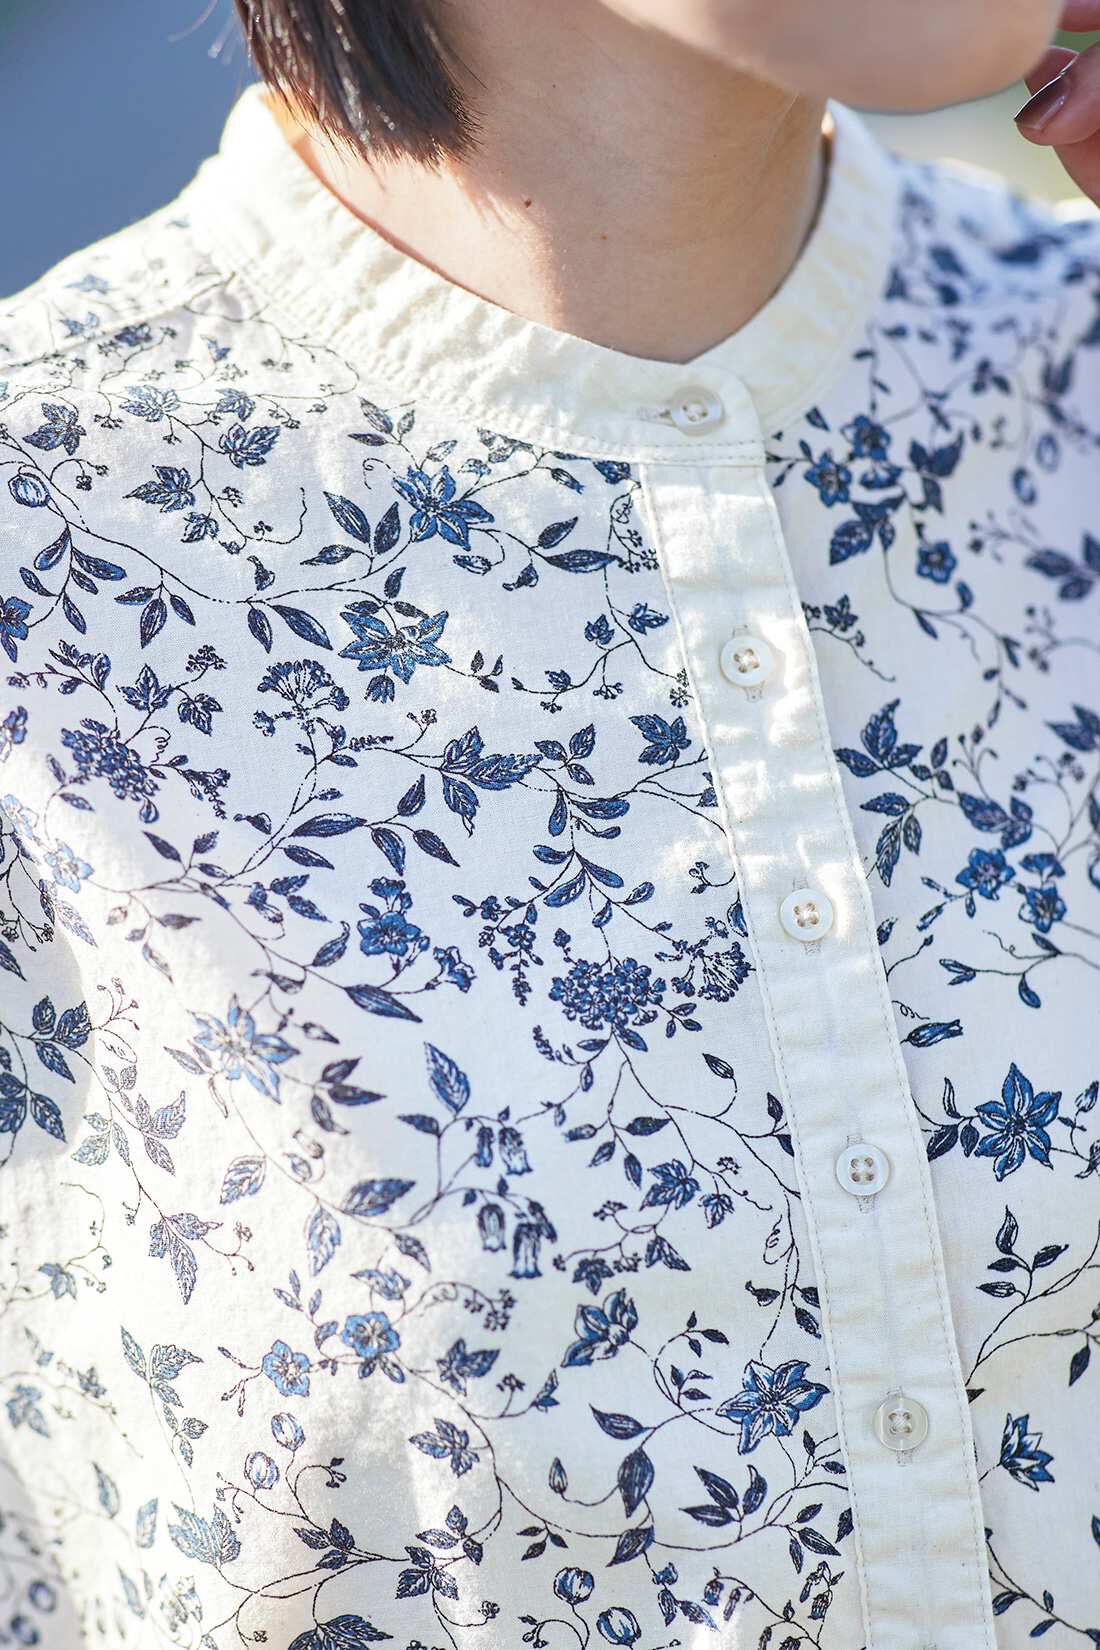 サニークラウズ|サニークラウズ ツルの絡まるシャツ〈レディース〉|植物モチーフの涼しげなブルー系プリント。